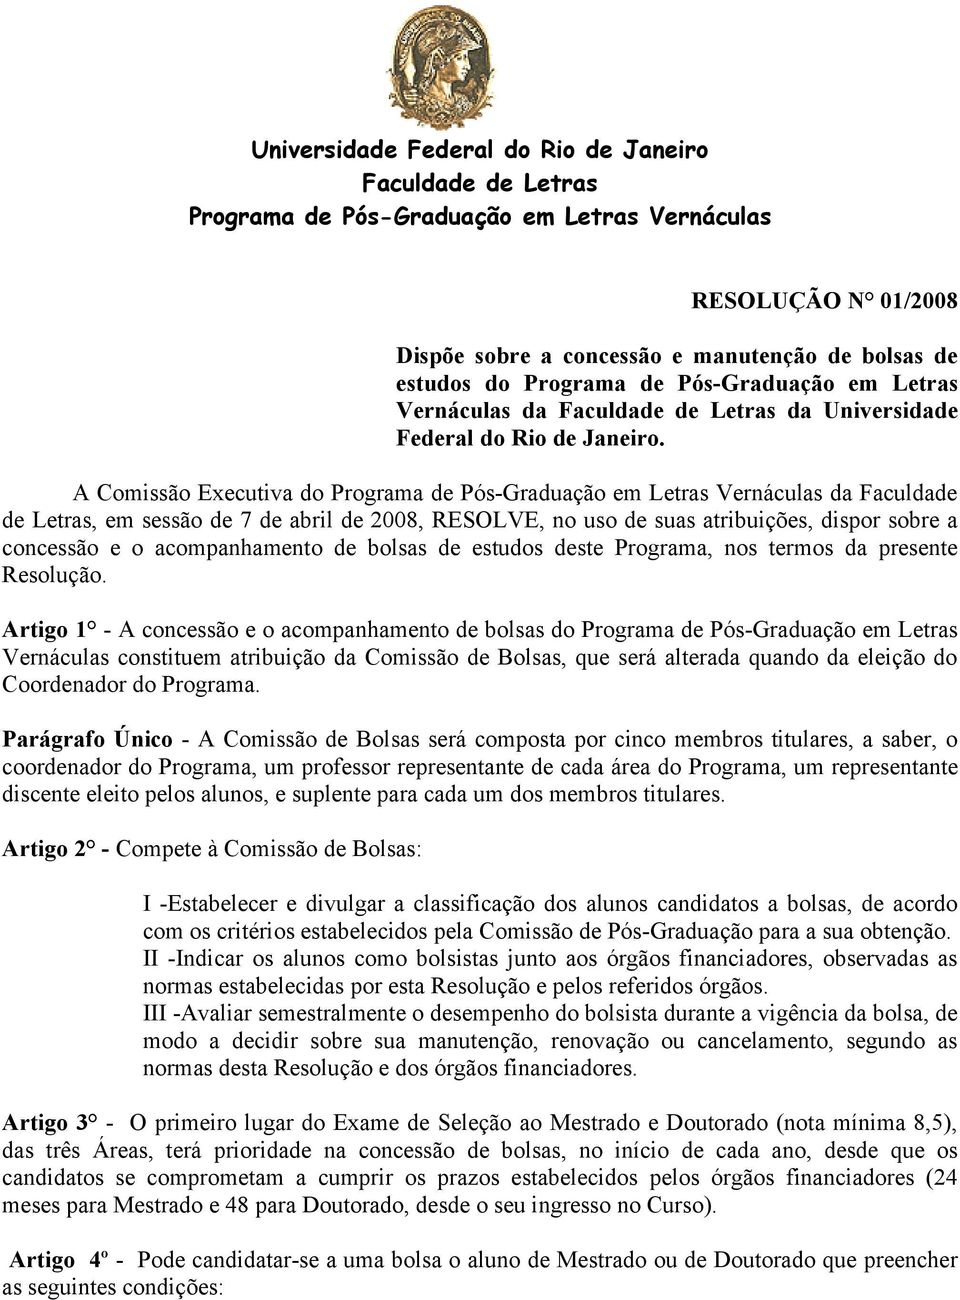 A Comissão Executiva do Programa de Pós-Graduação em Letras Vernáculas da Faculdade de Letras, em sessão de 7 de abril de 2008, RESOLVE, no uso de suas atribuições, dispor sobre a concessão e o